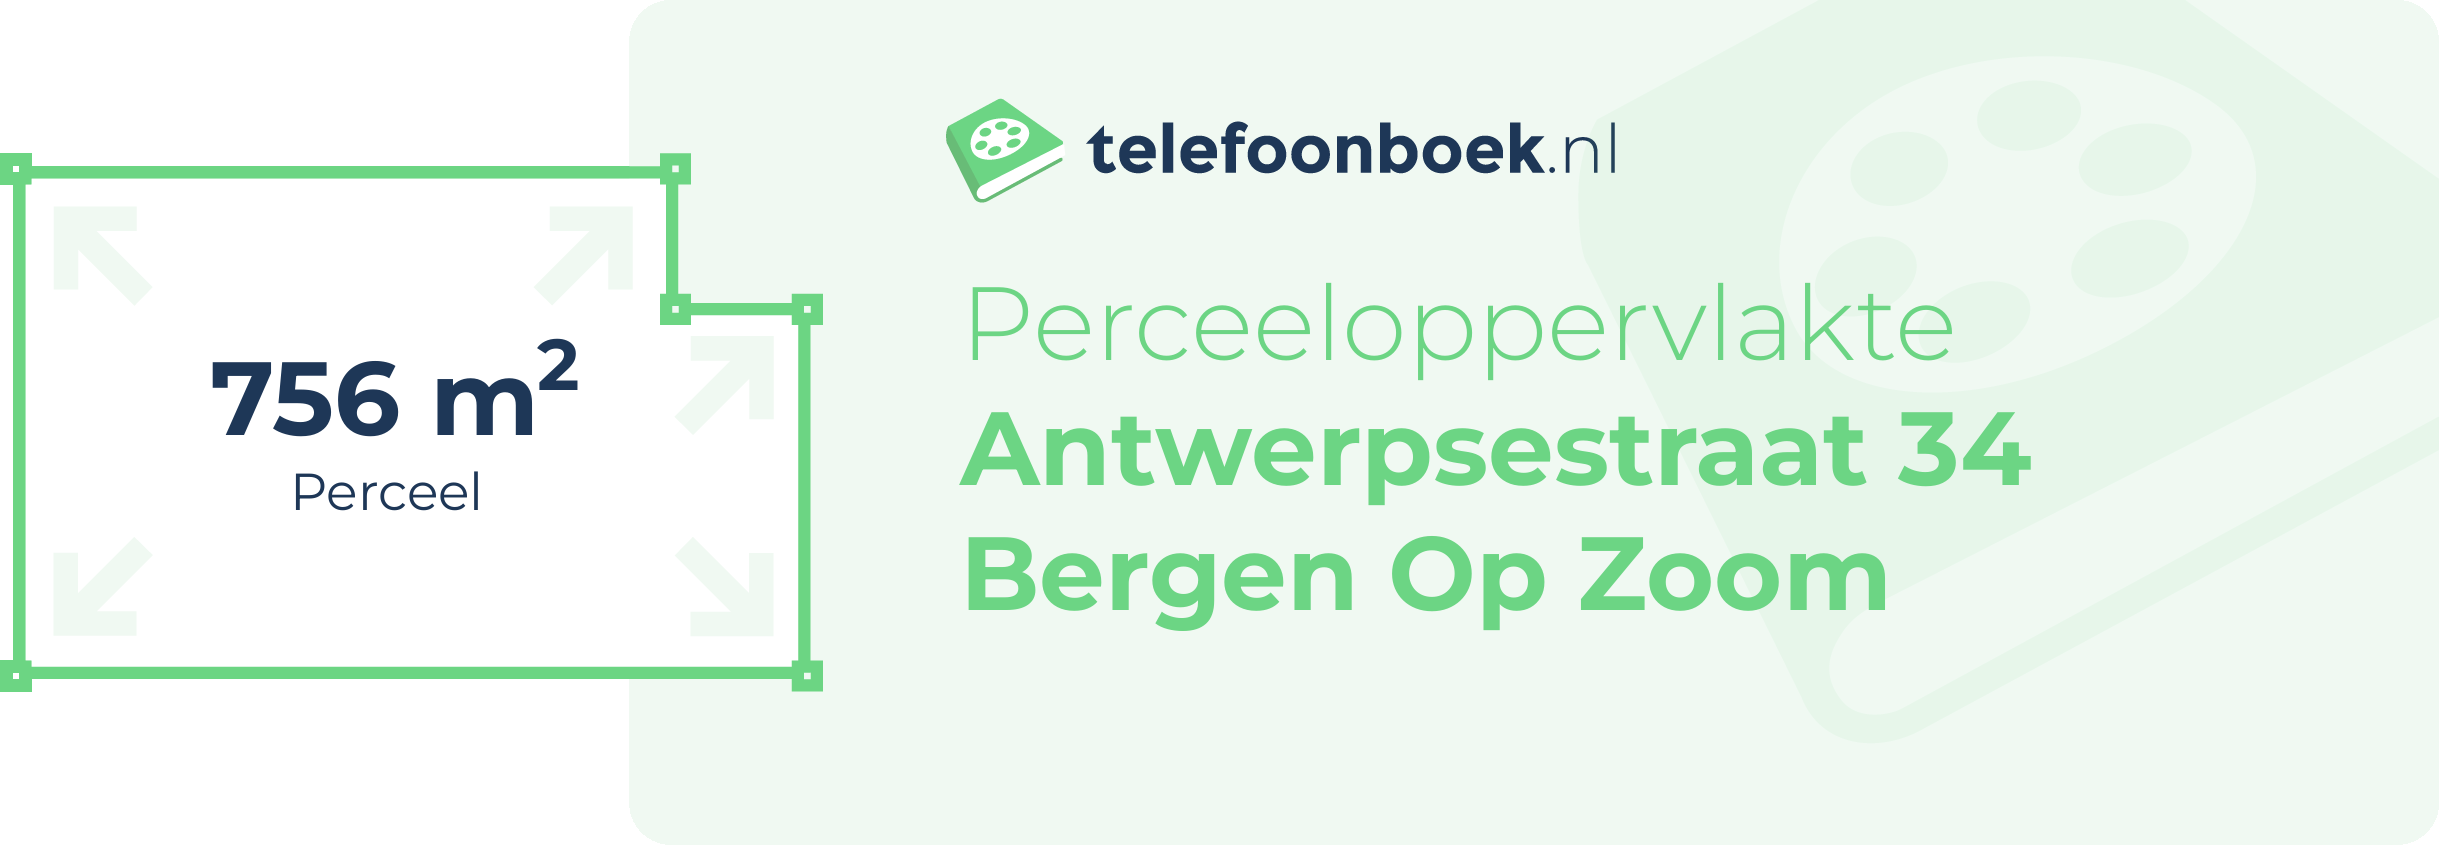 Perceeloppervlakte Antwerpsestraat 34 Bergen Op Zoom